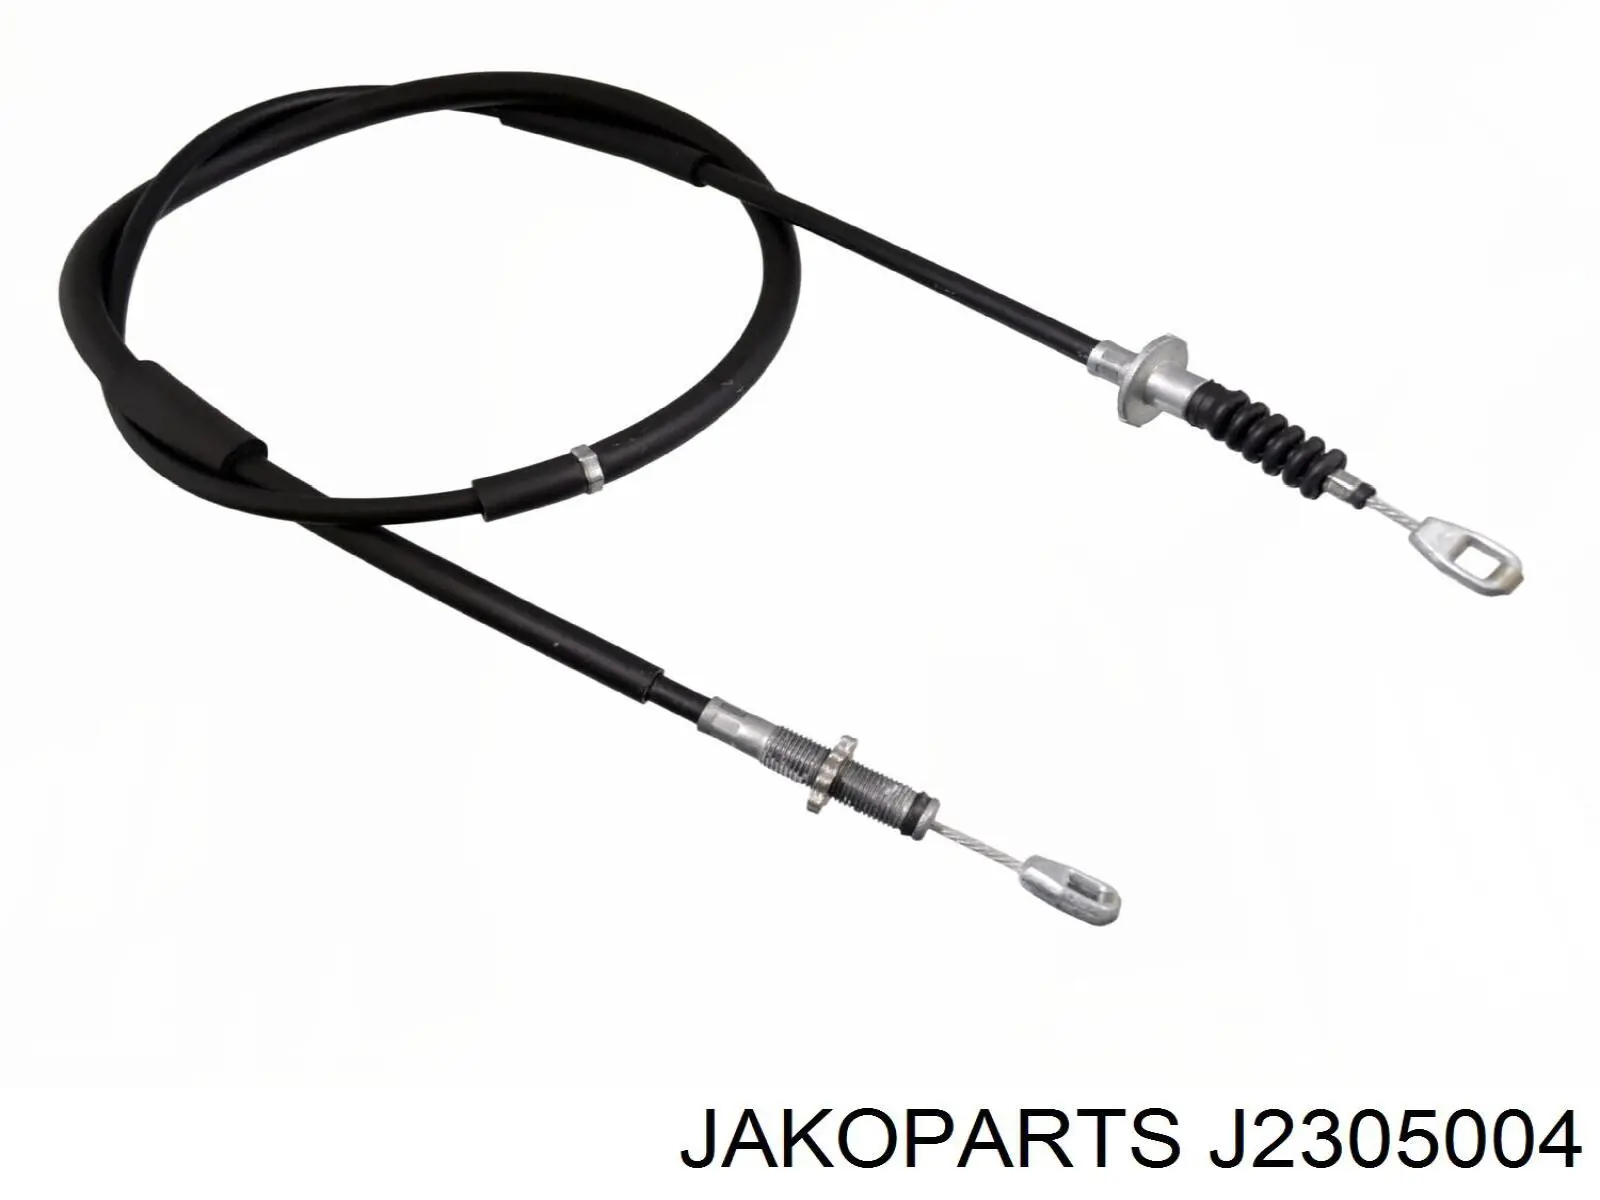 Cable de embrague J2305004 Jakoparts